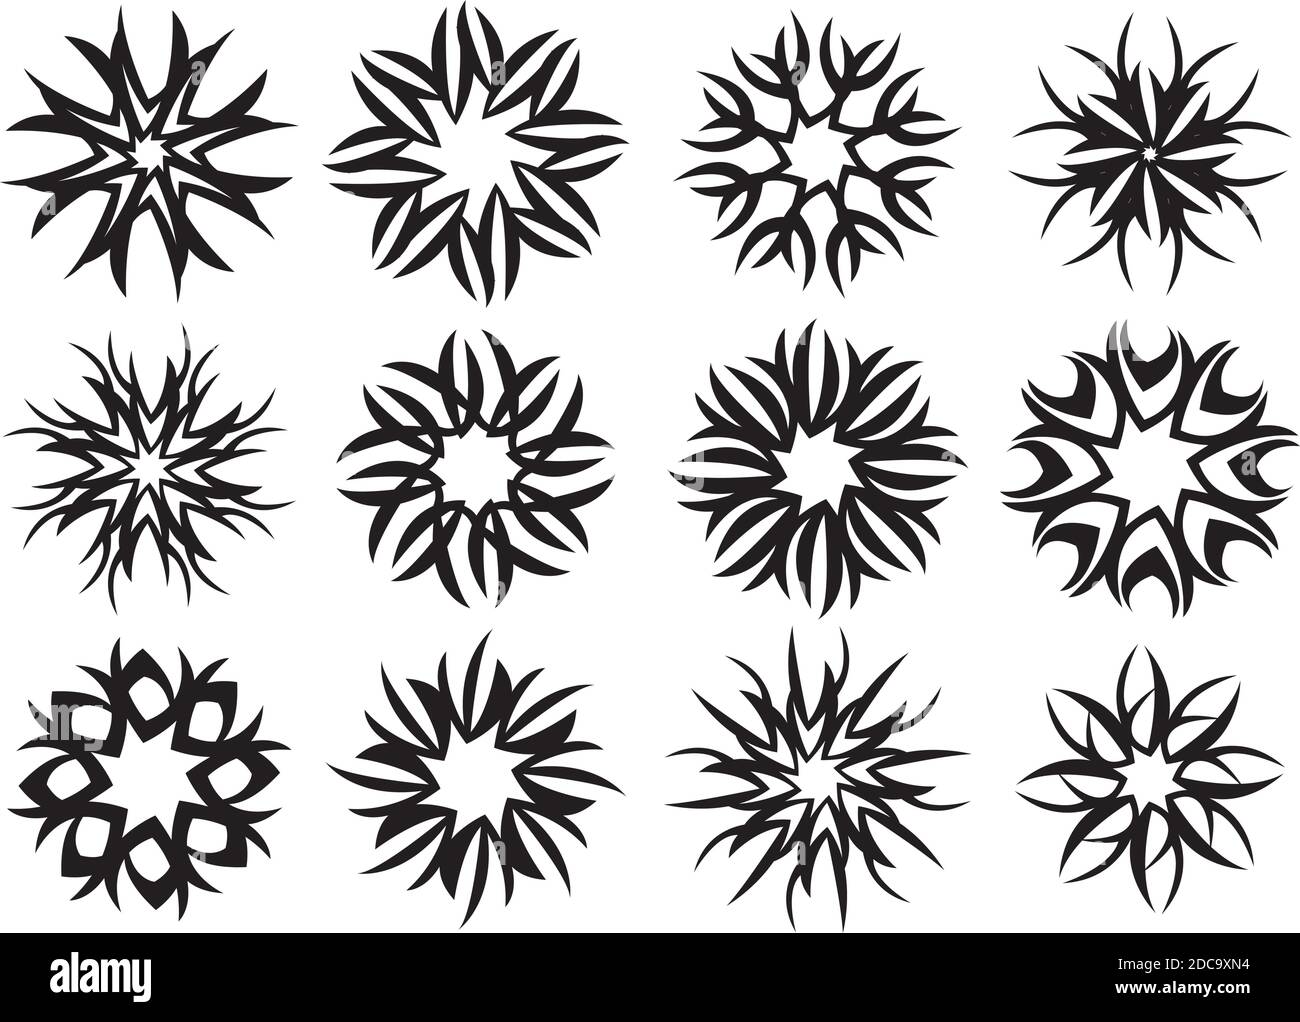 Set von abstrakten Motivmustern mit drehenden visuellen Effekt in schwarz und weiß. Dekorative Vektorgrafik Element auf weißem Hintergrund isoliert. Stock Vektor